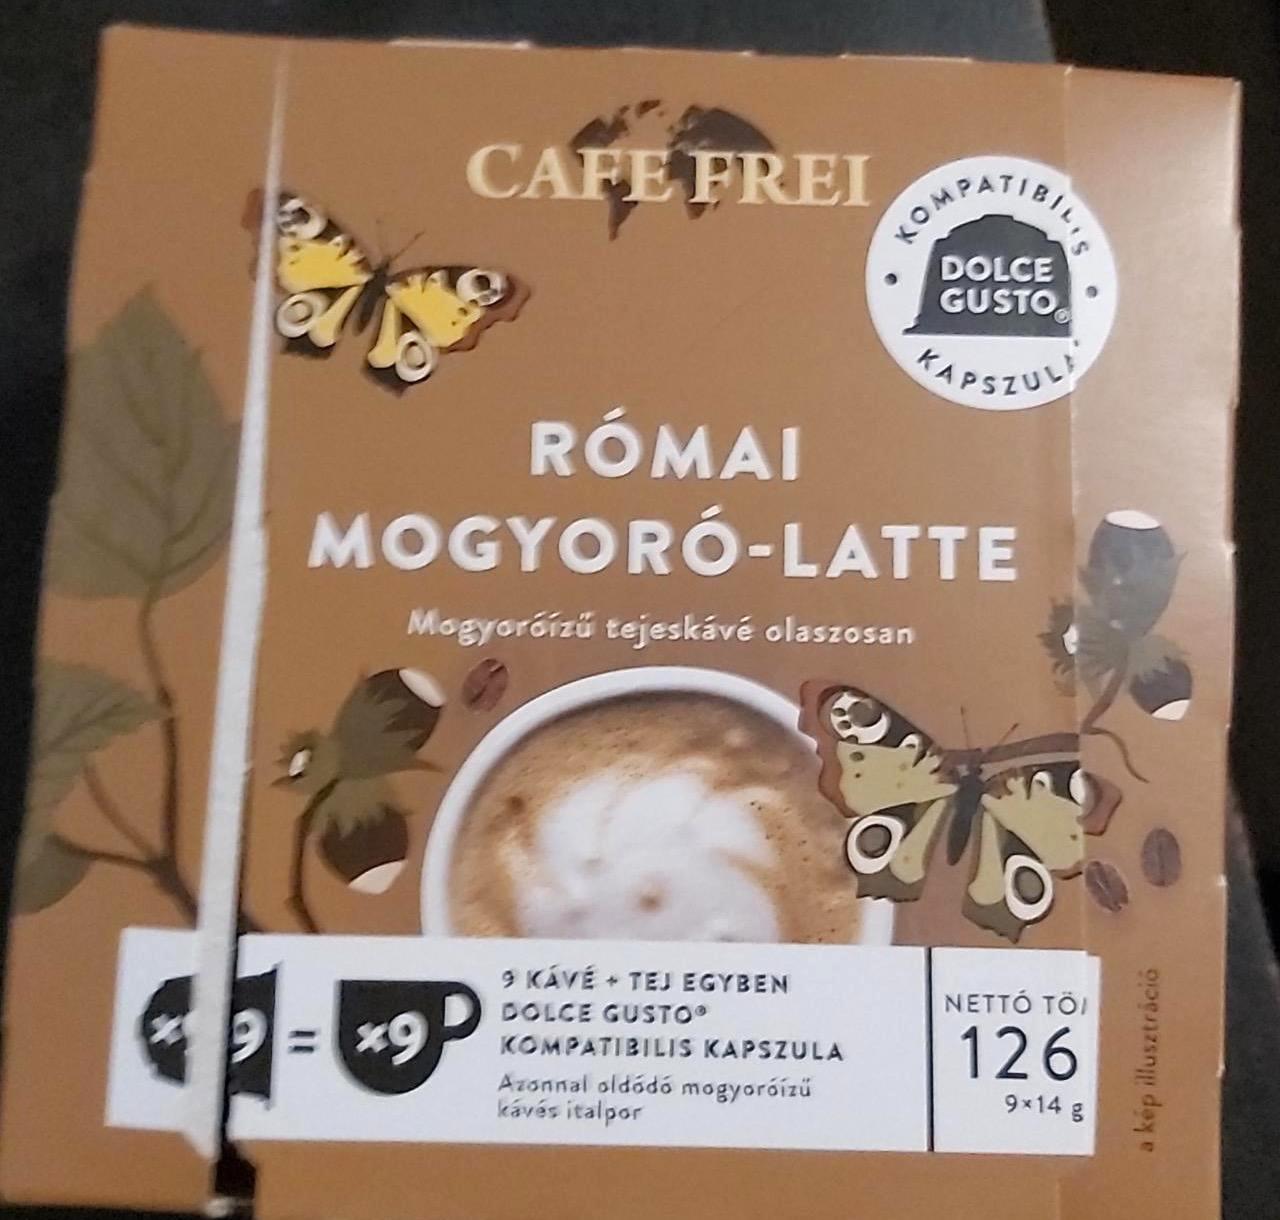 Képek - Római mogyoró latte Cafe frei